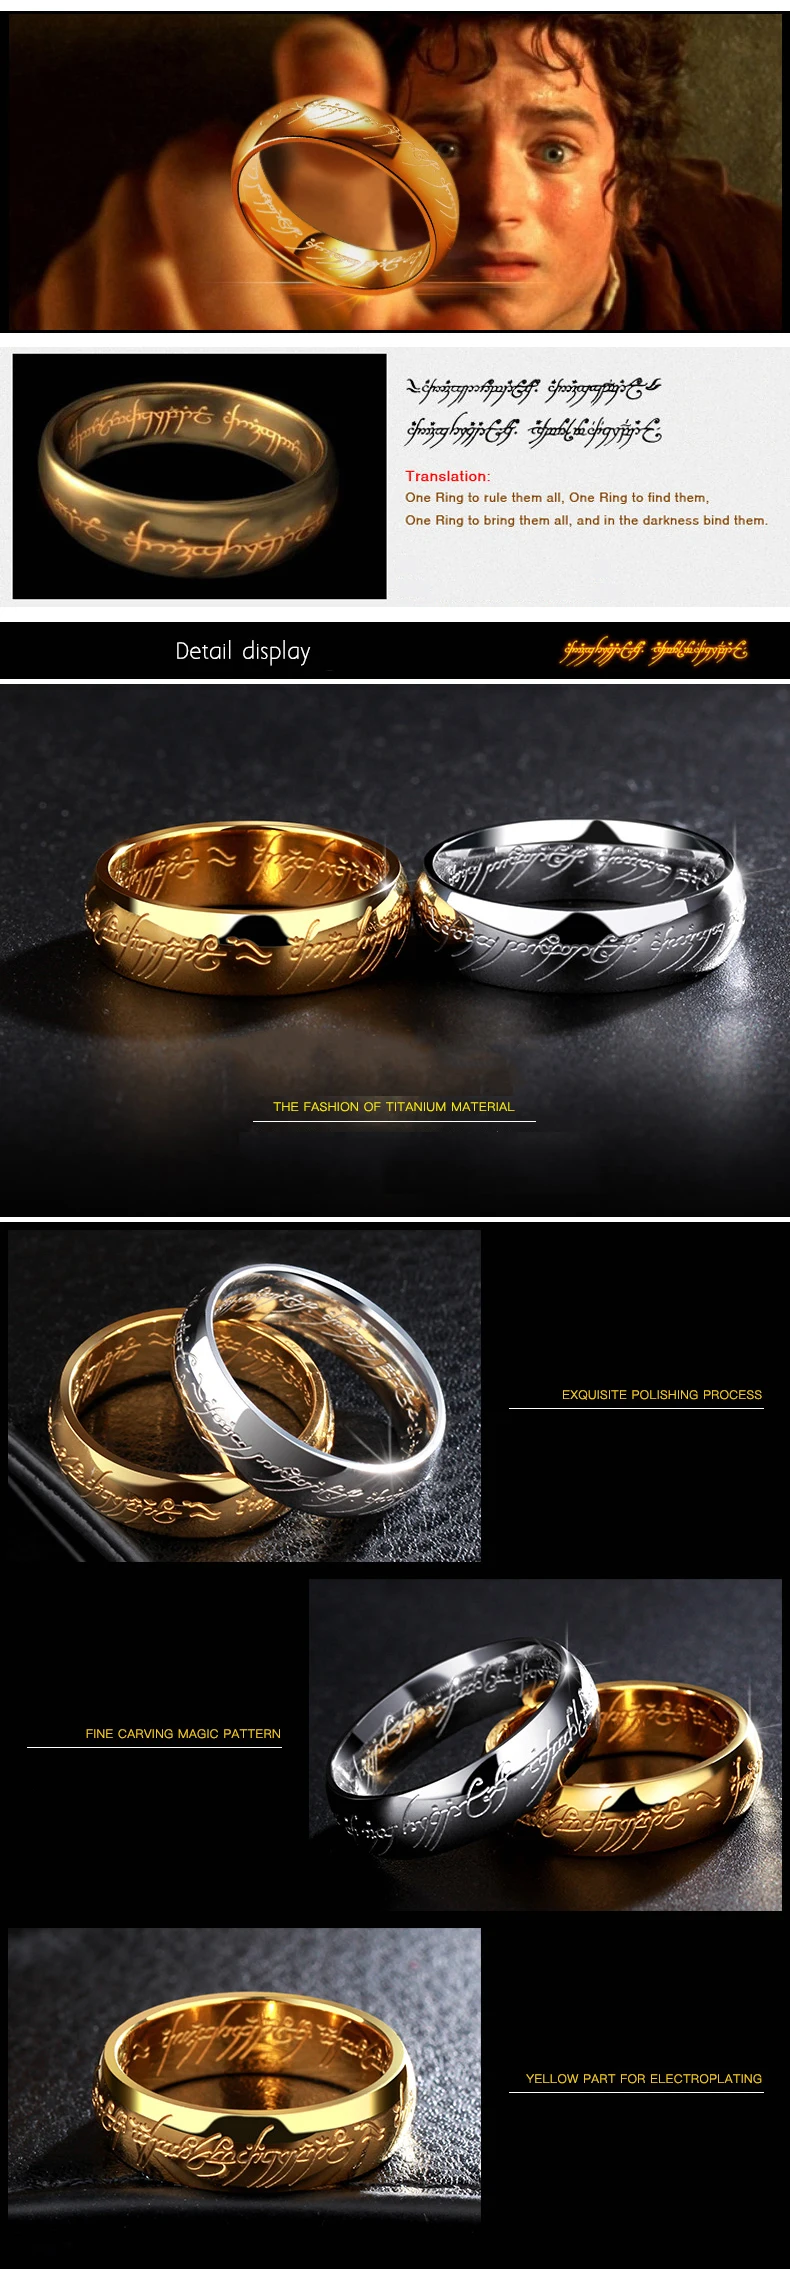 Обручальные кольца с гравировкой из титановой стали, подарок для родителей на помолвку, парные кольца Хоббита, ювелирные изделия из фильма